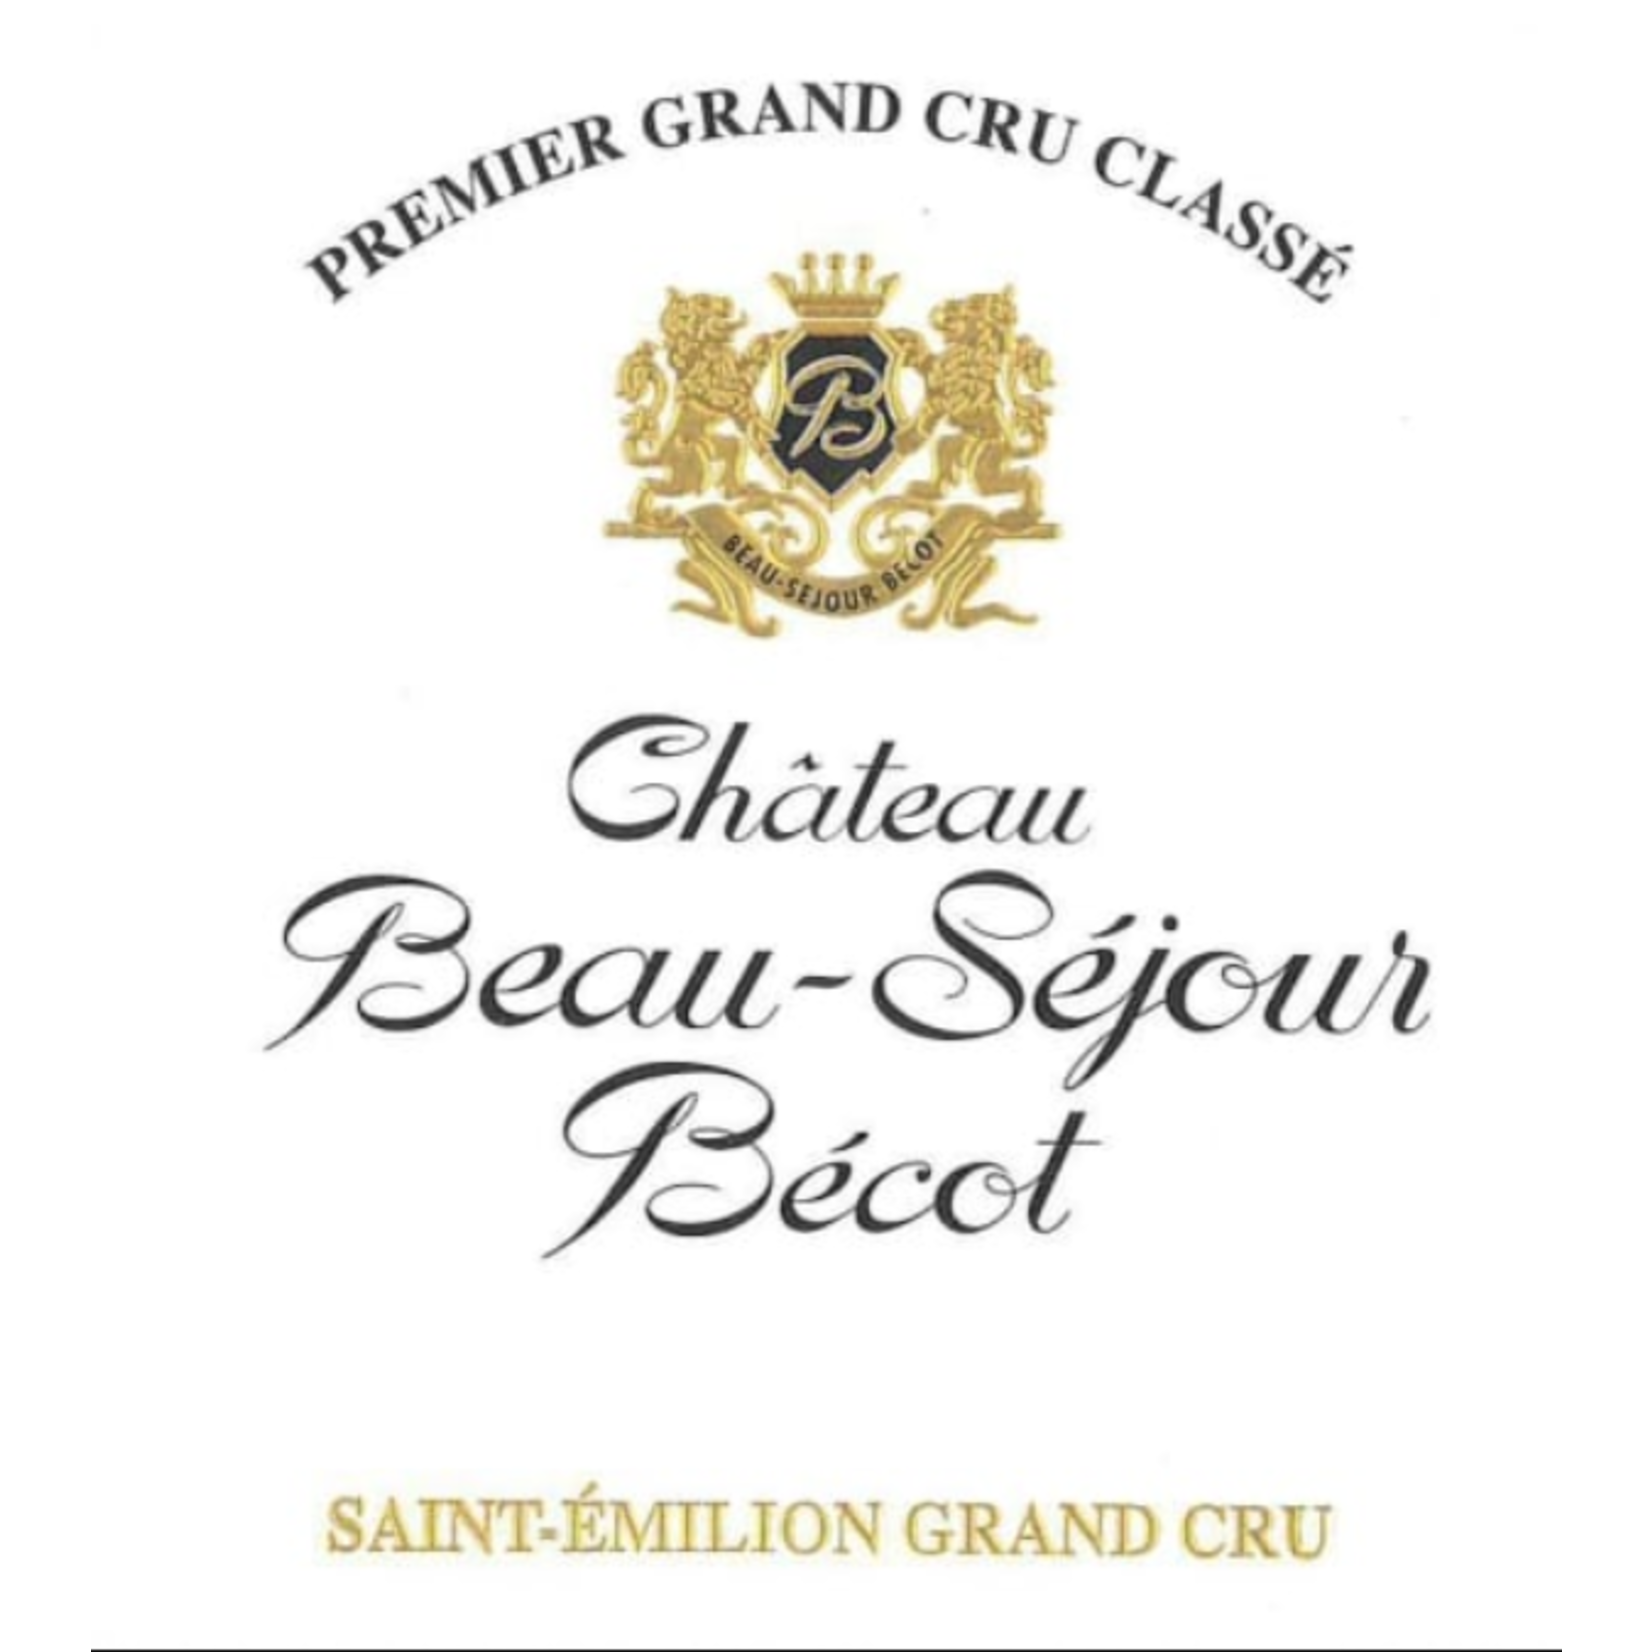 Château Grand Vin De Bordeaux Château Beau-Séjour Bécot Saint-Emilion Grand Cru 2018  France